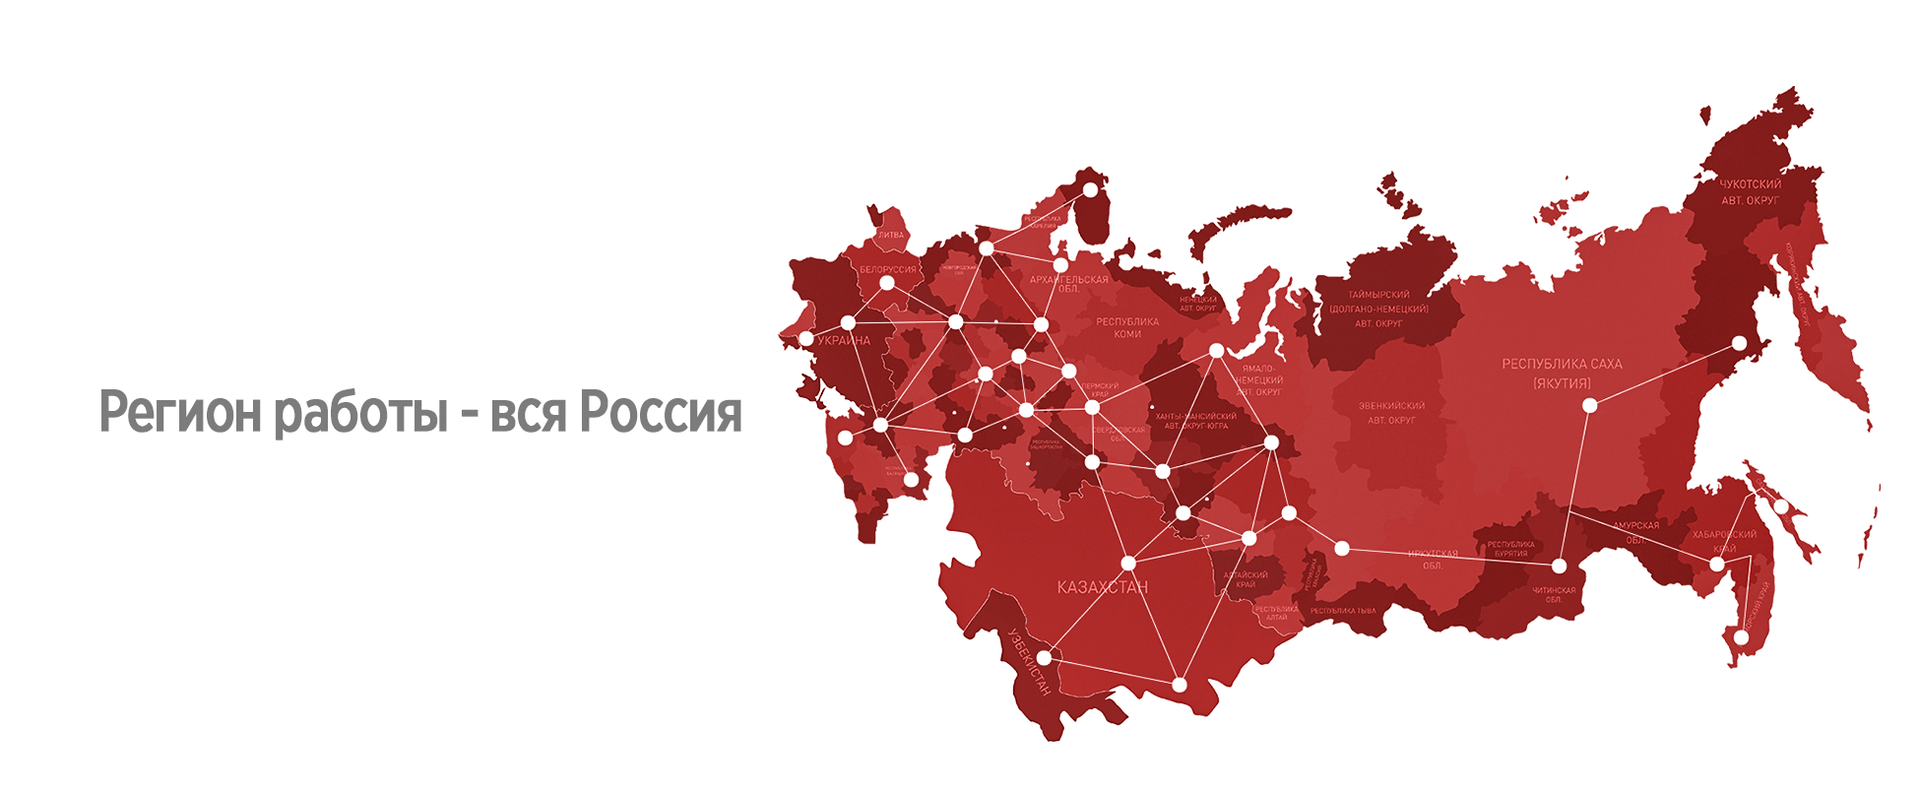 Фоны с картами России